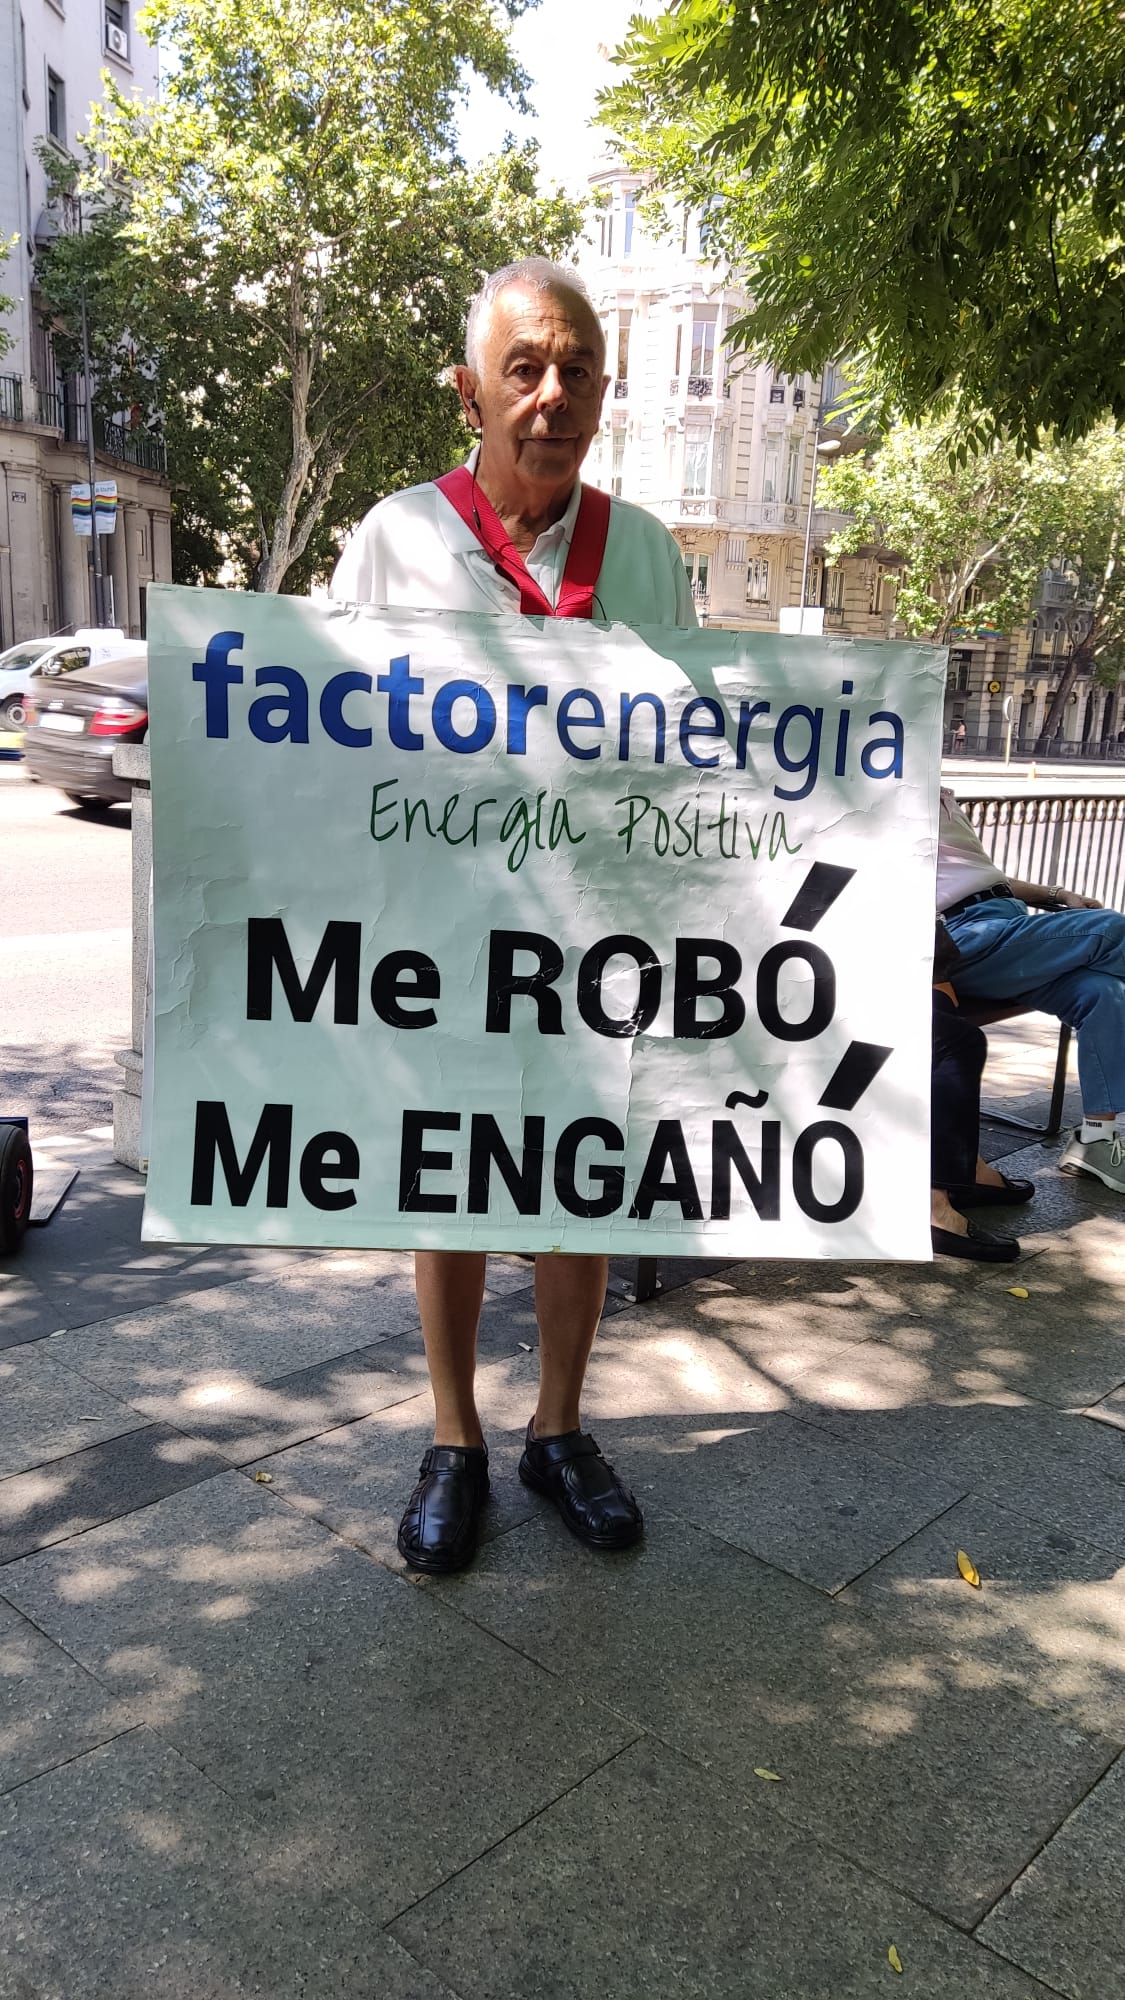 Manuel, empresario de 67 años: "Factor Energía me engañó prometiéndome ahorros falsos en la factura"